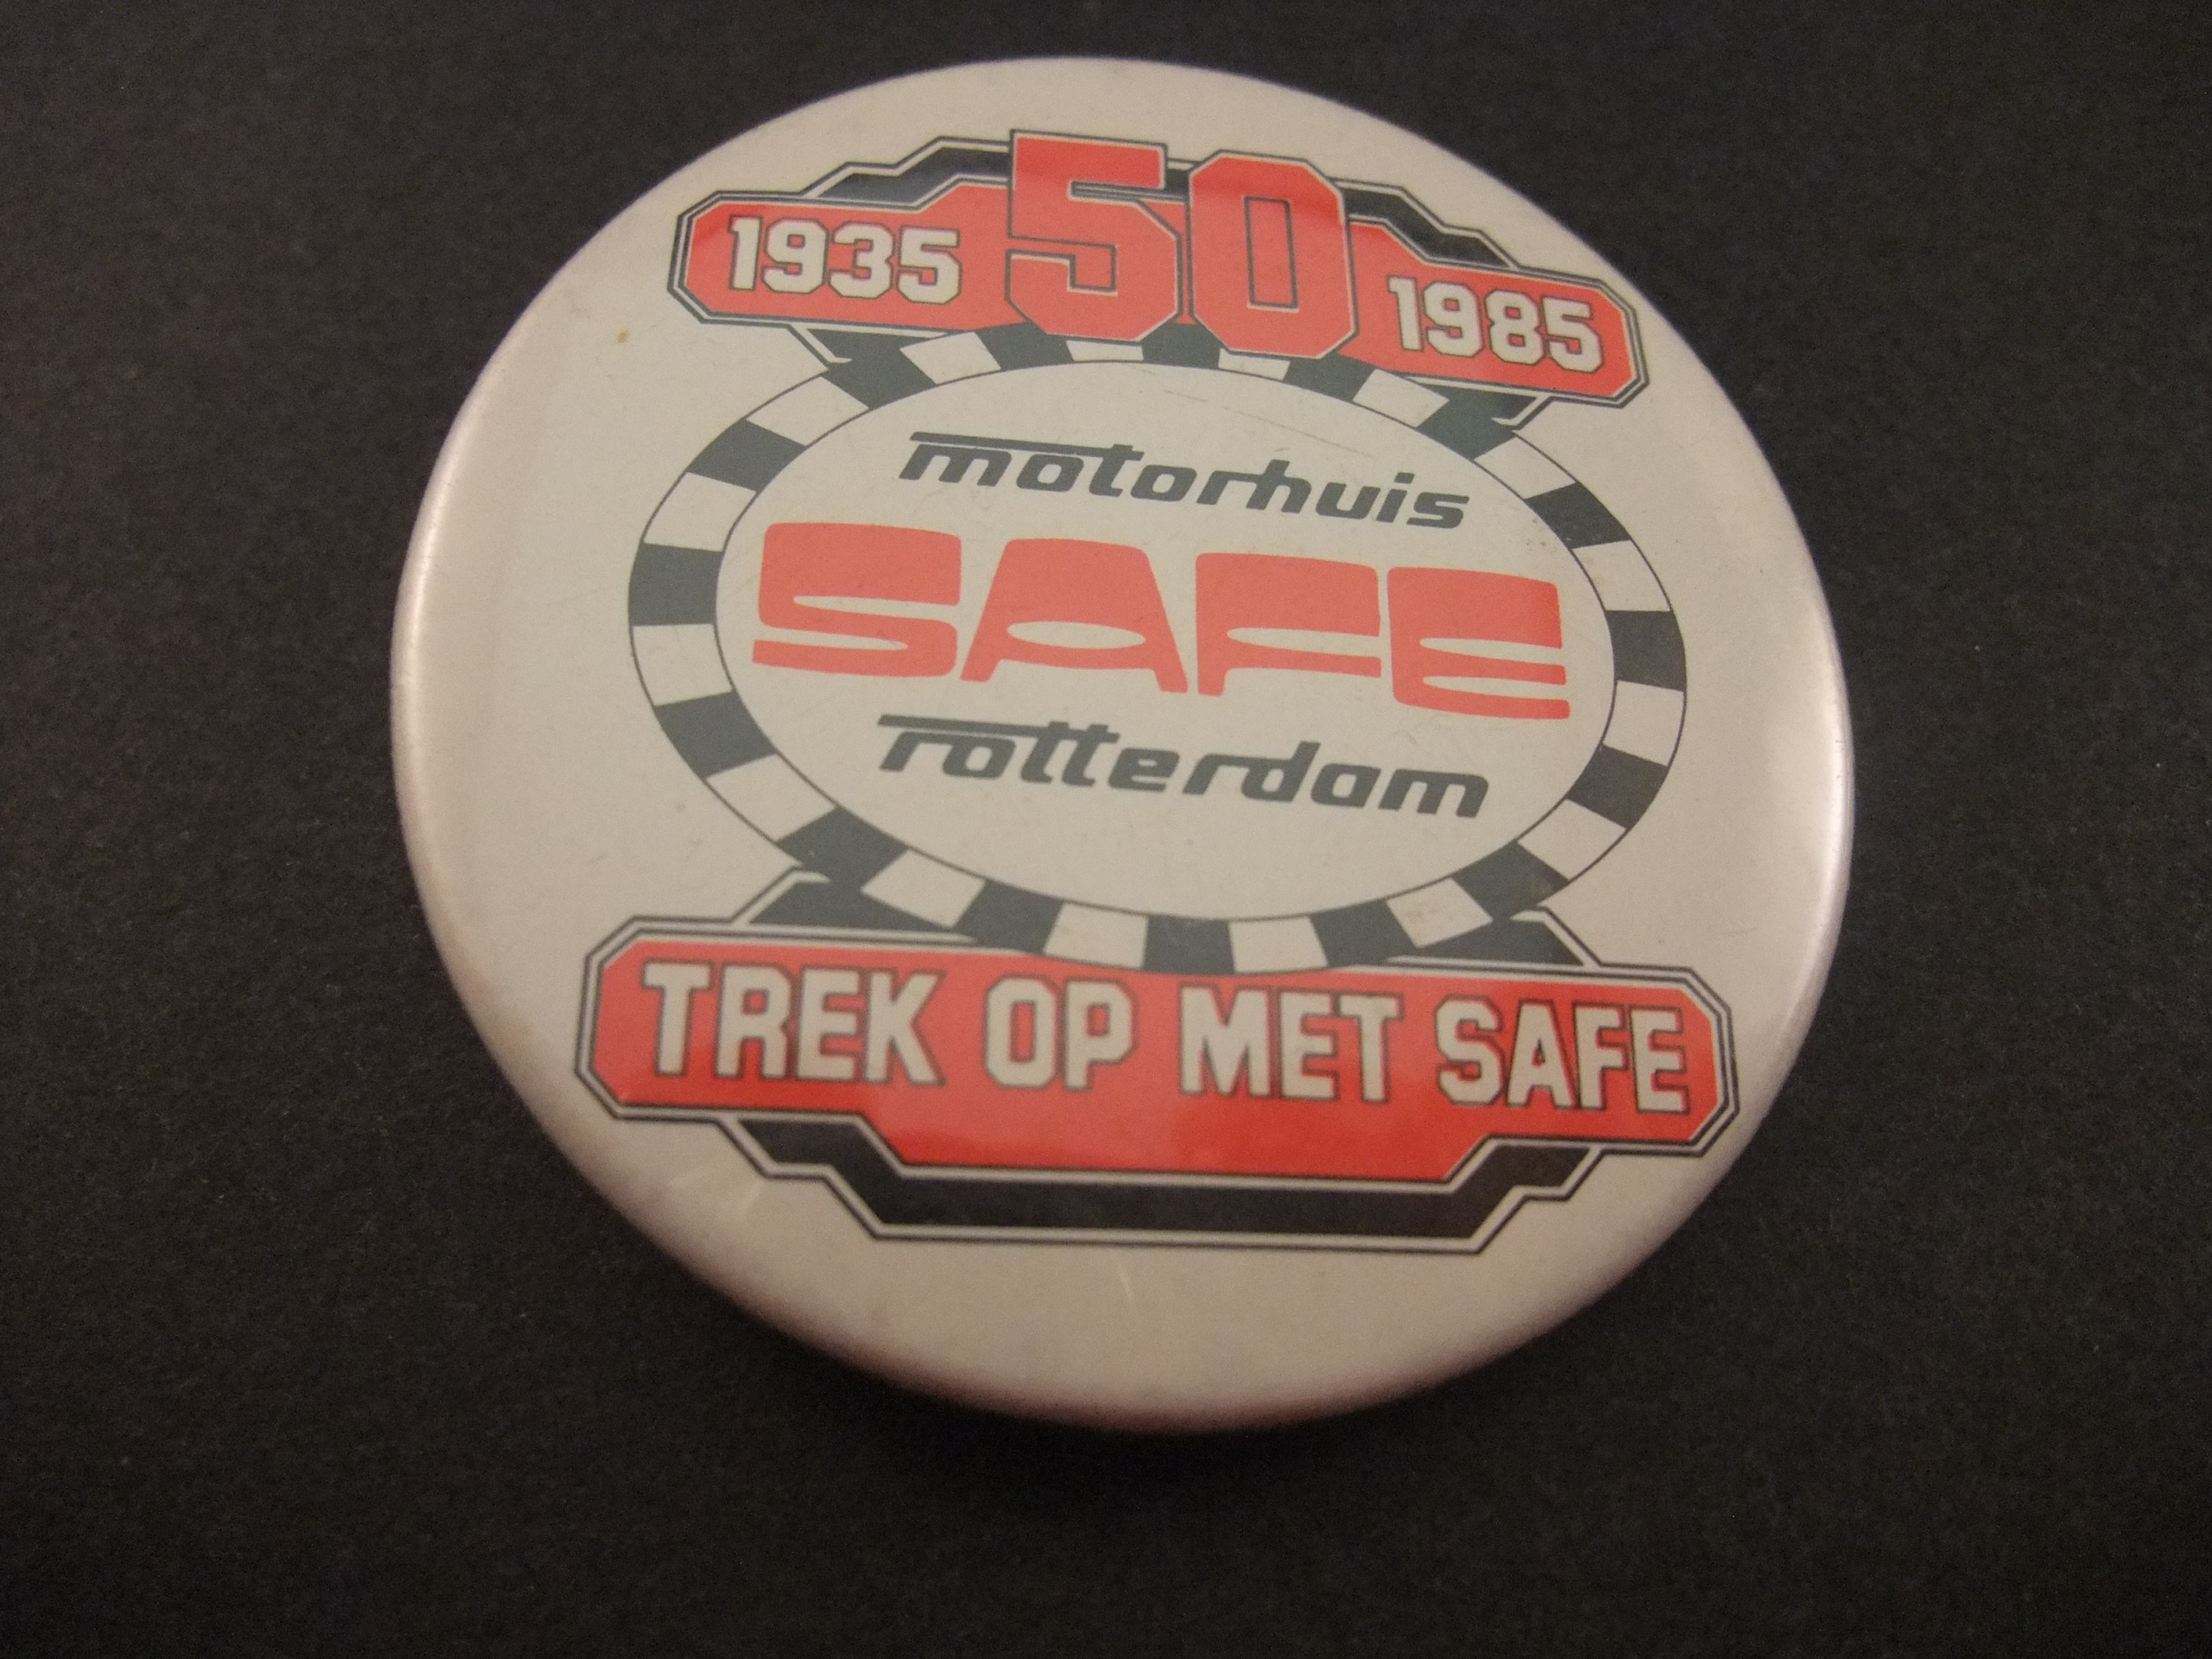 Motorhuis Safe Rotterdam ( keten van motorzaken)